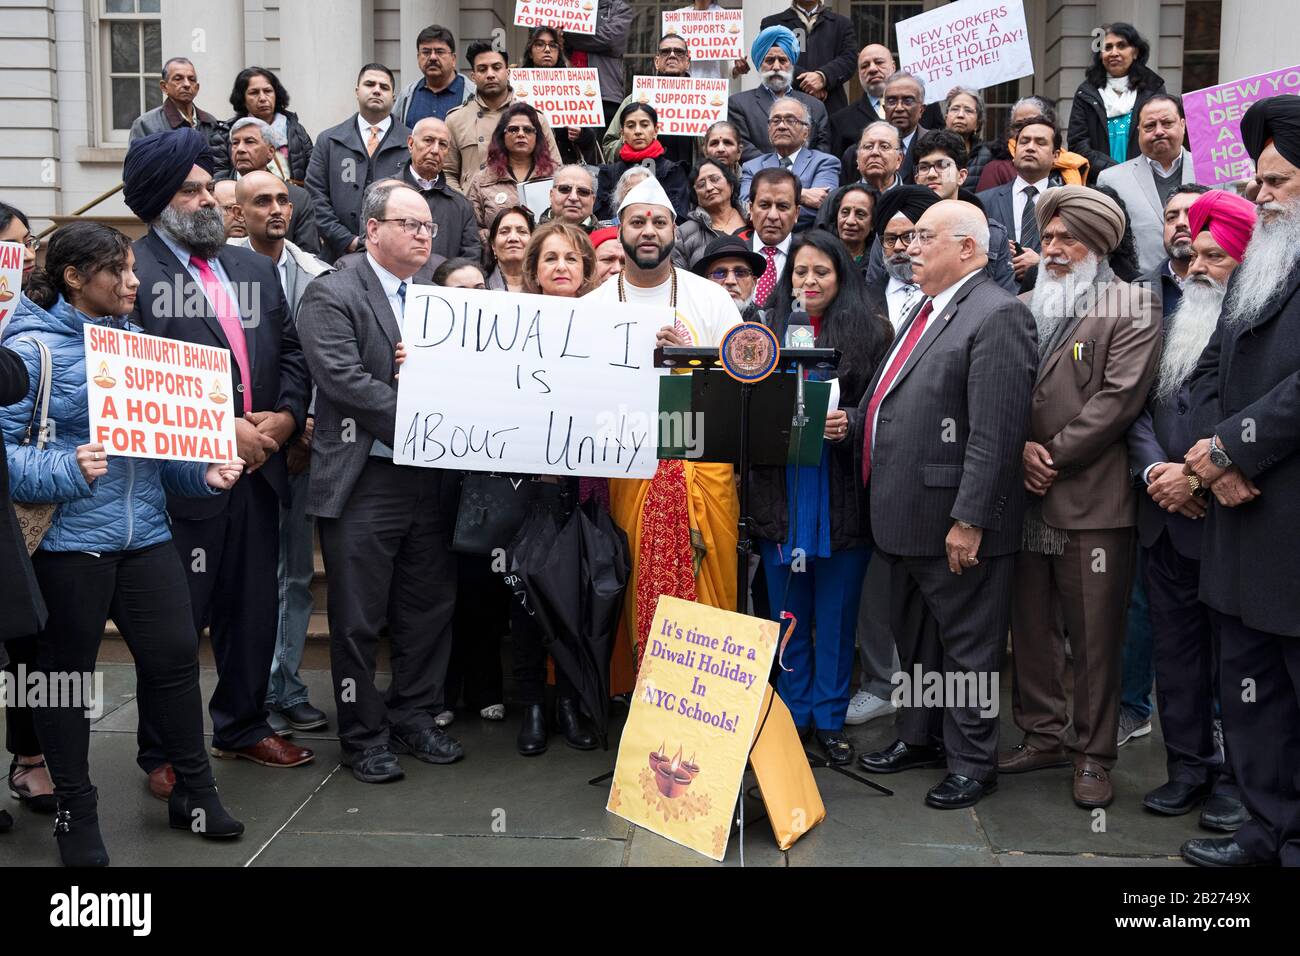 Una folla diversificata di indù, sikh, caucasici e altri dimostrano sui gradini del municipio per dichiarare Diwali una vacanza scolastica. A Manhattan, NYC. Foto Stock